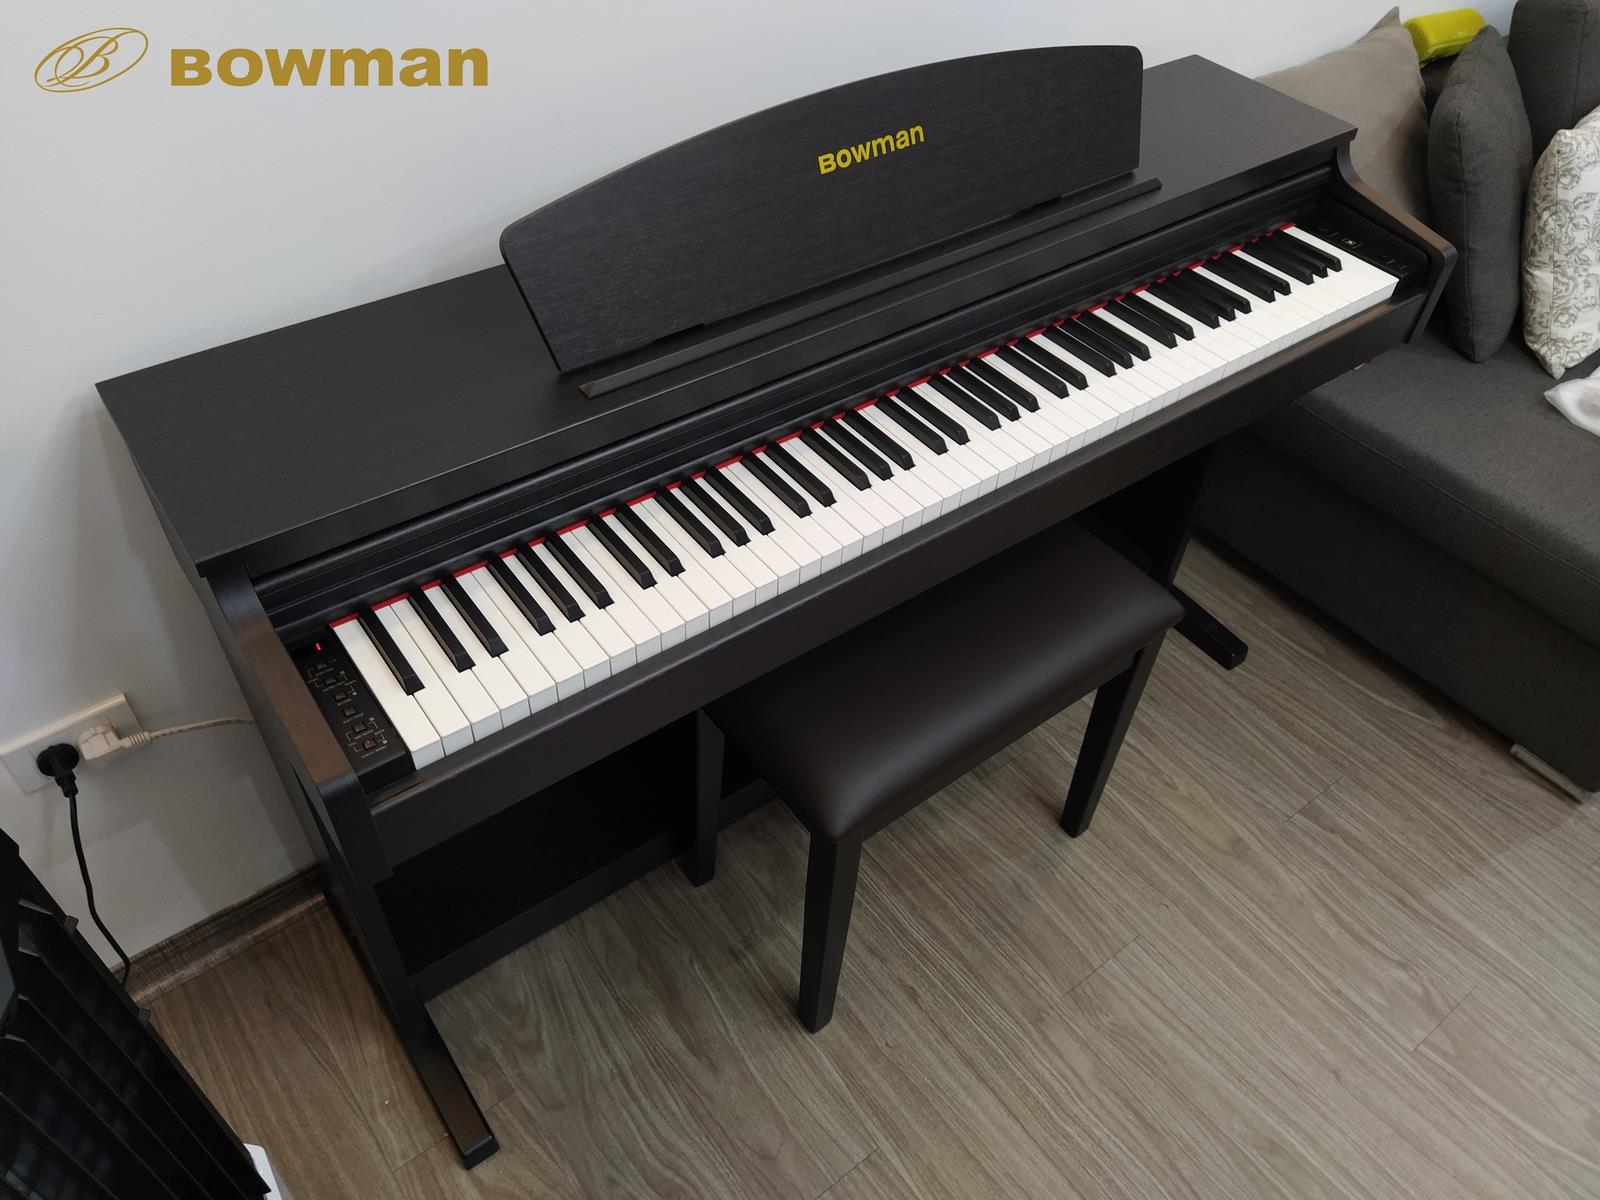 Hình ảnh chi tiết sản phẩm BOWMAN CX200 SR - màu đen - BowmanPIANO.com.vn